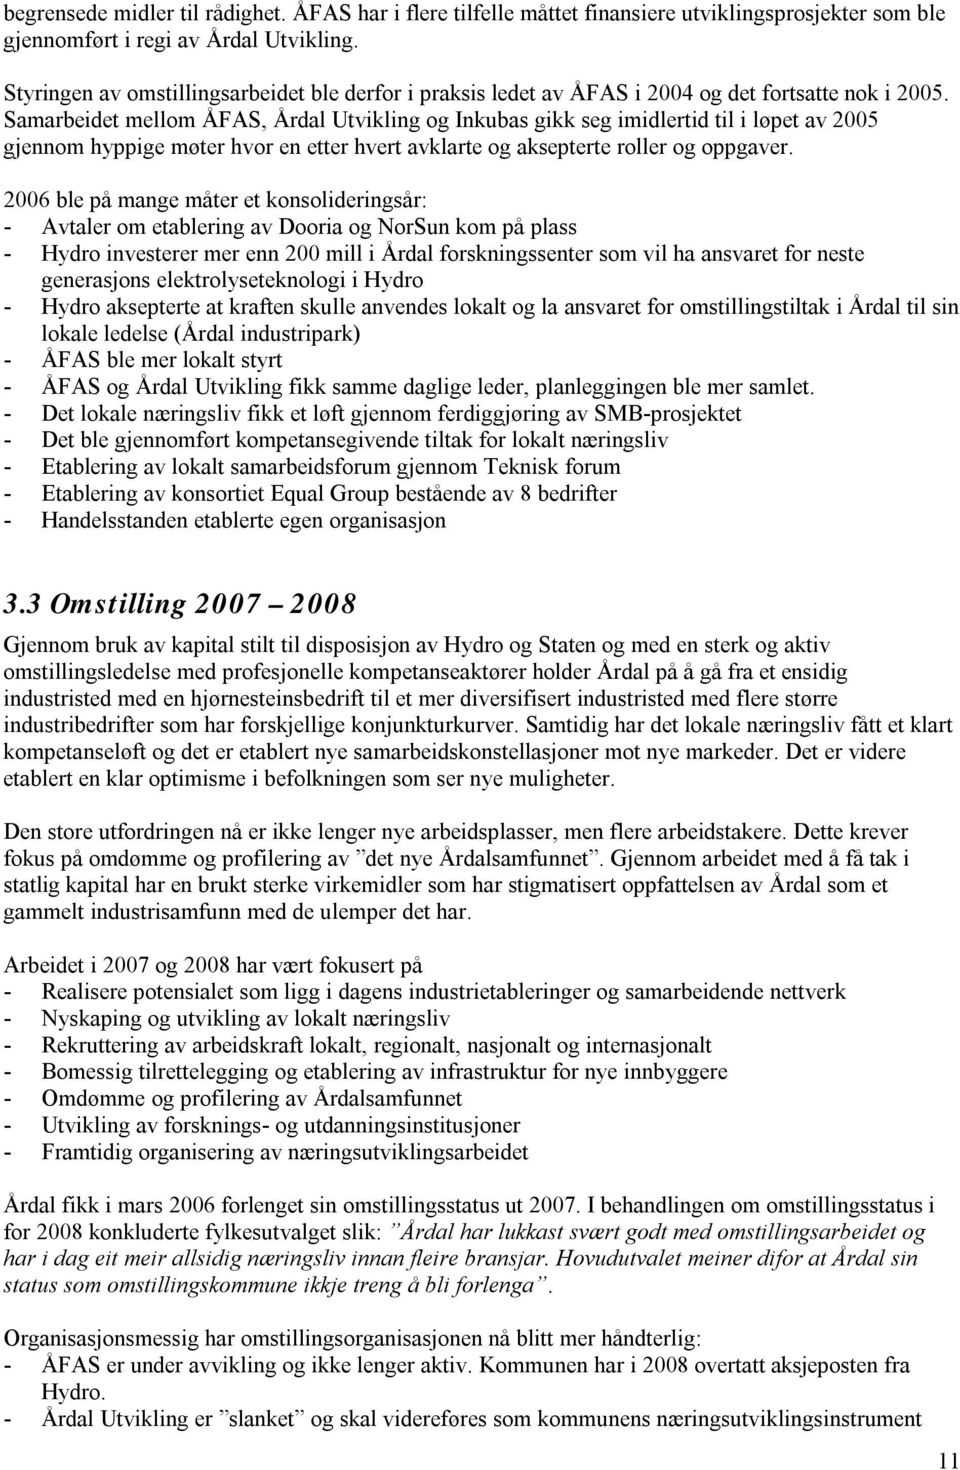 Samarbeidet mellom ÅFAS, Årdal Utvikling og Inkubas gikk seg imidlertid til i løpet av 2005 gjennom hyppige møter hvor en etter hvert avklarte og aksepterte roller og oppgaver.